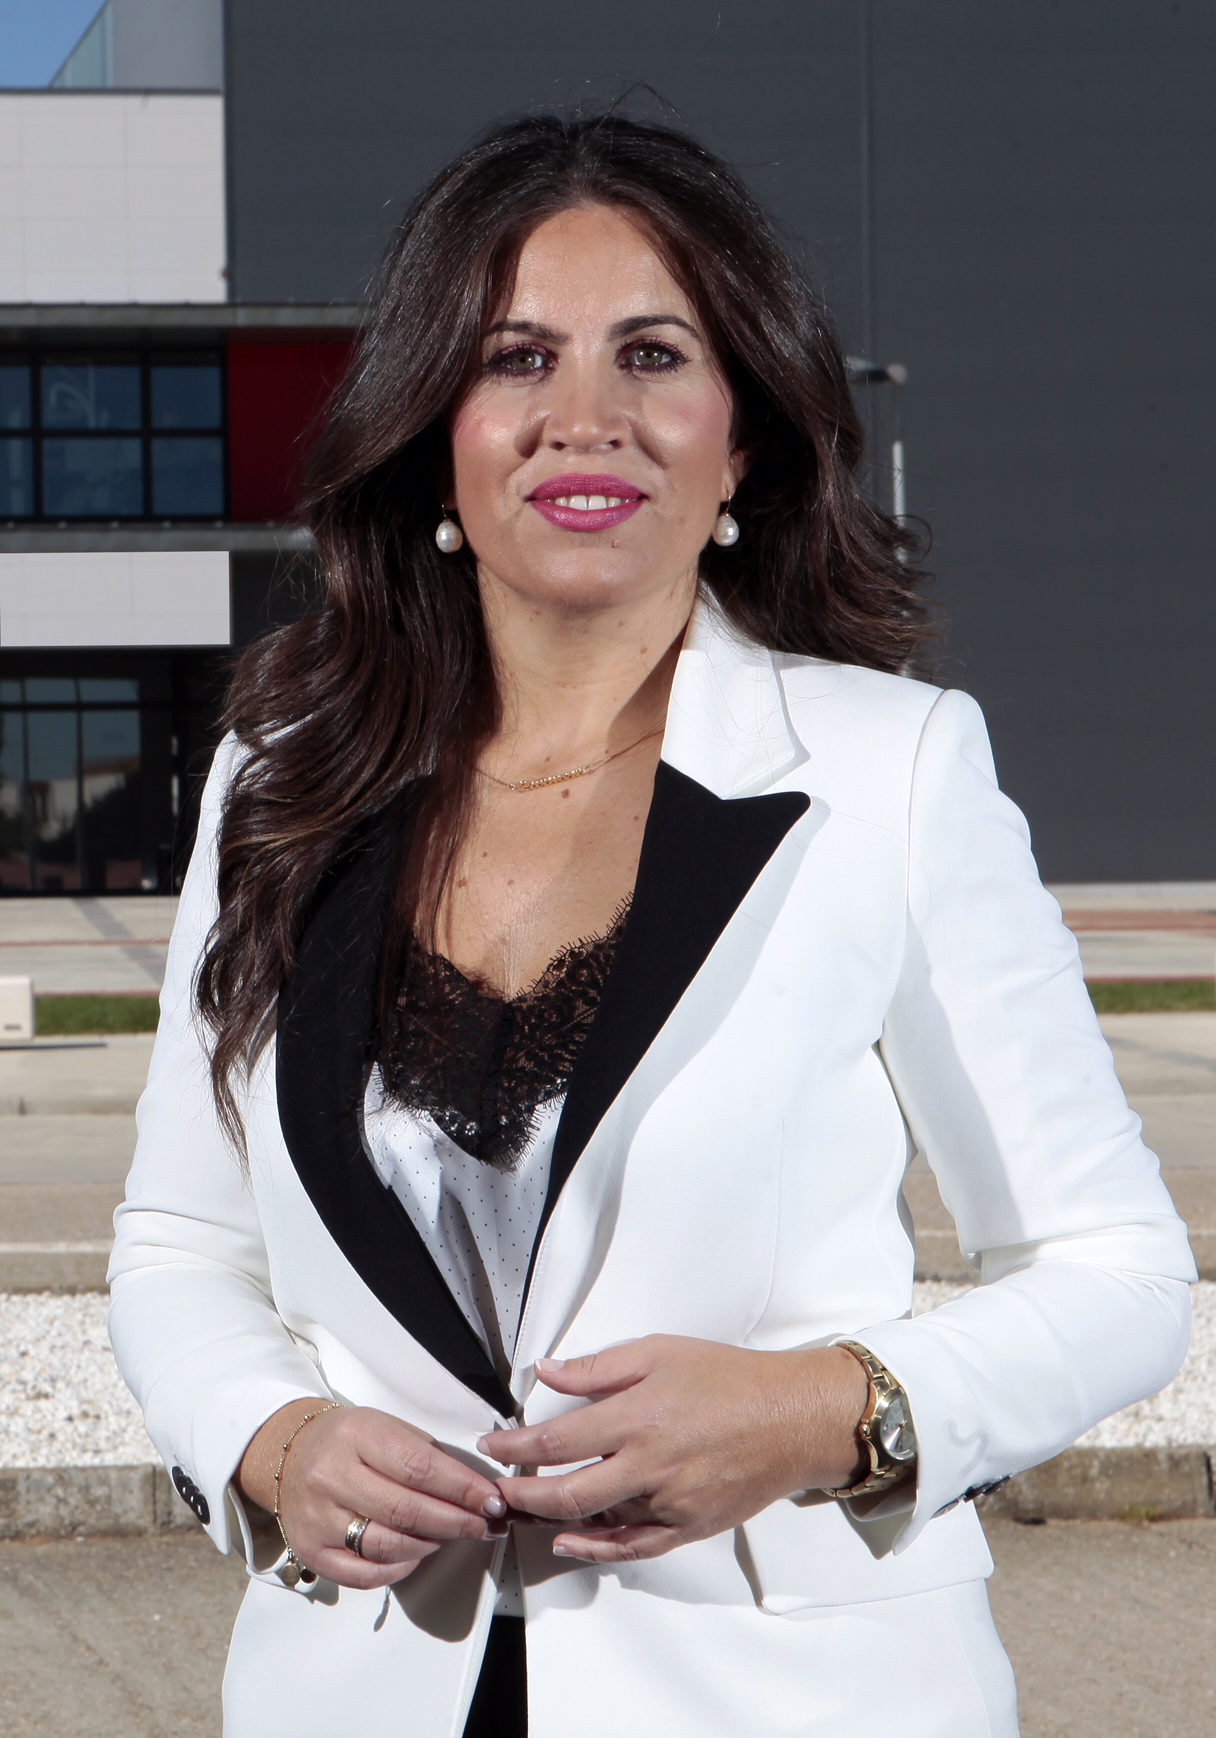 Imelda Rodríguez Escanciano